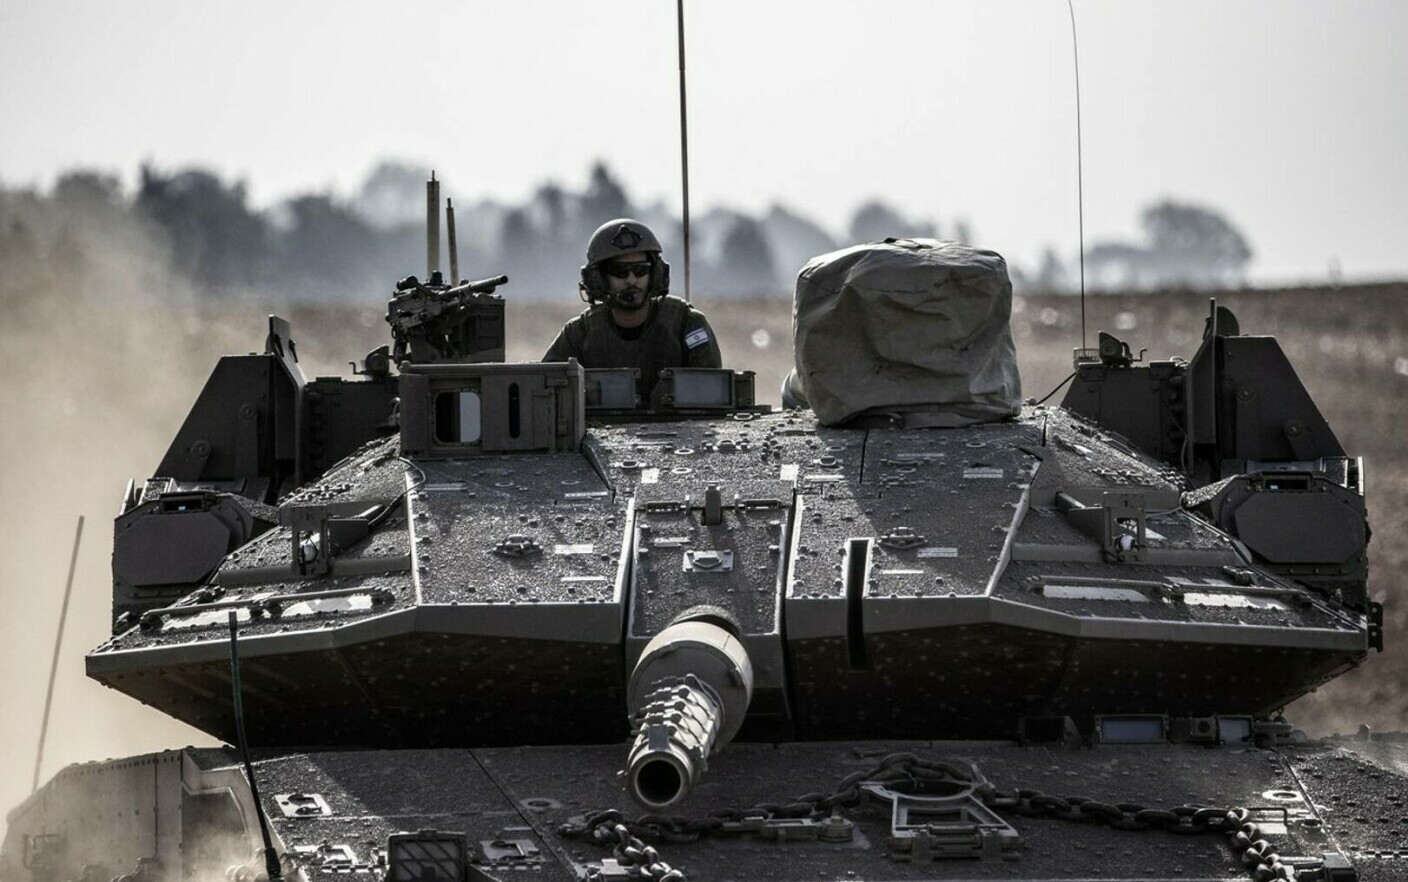 armata israeliană